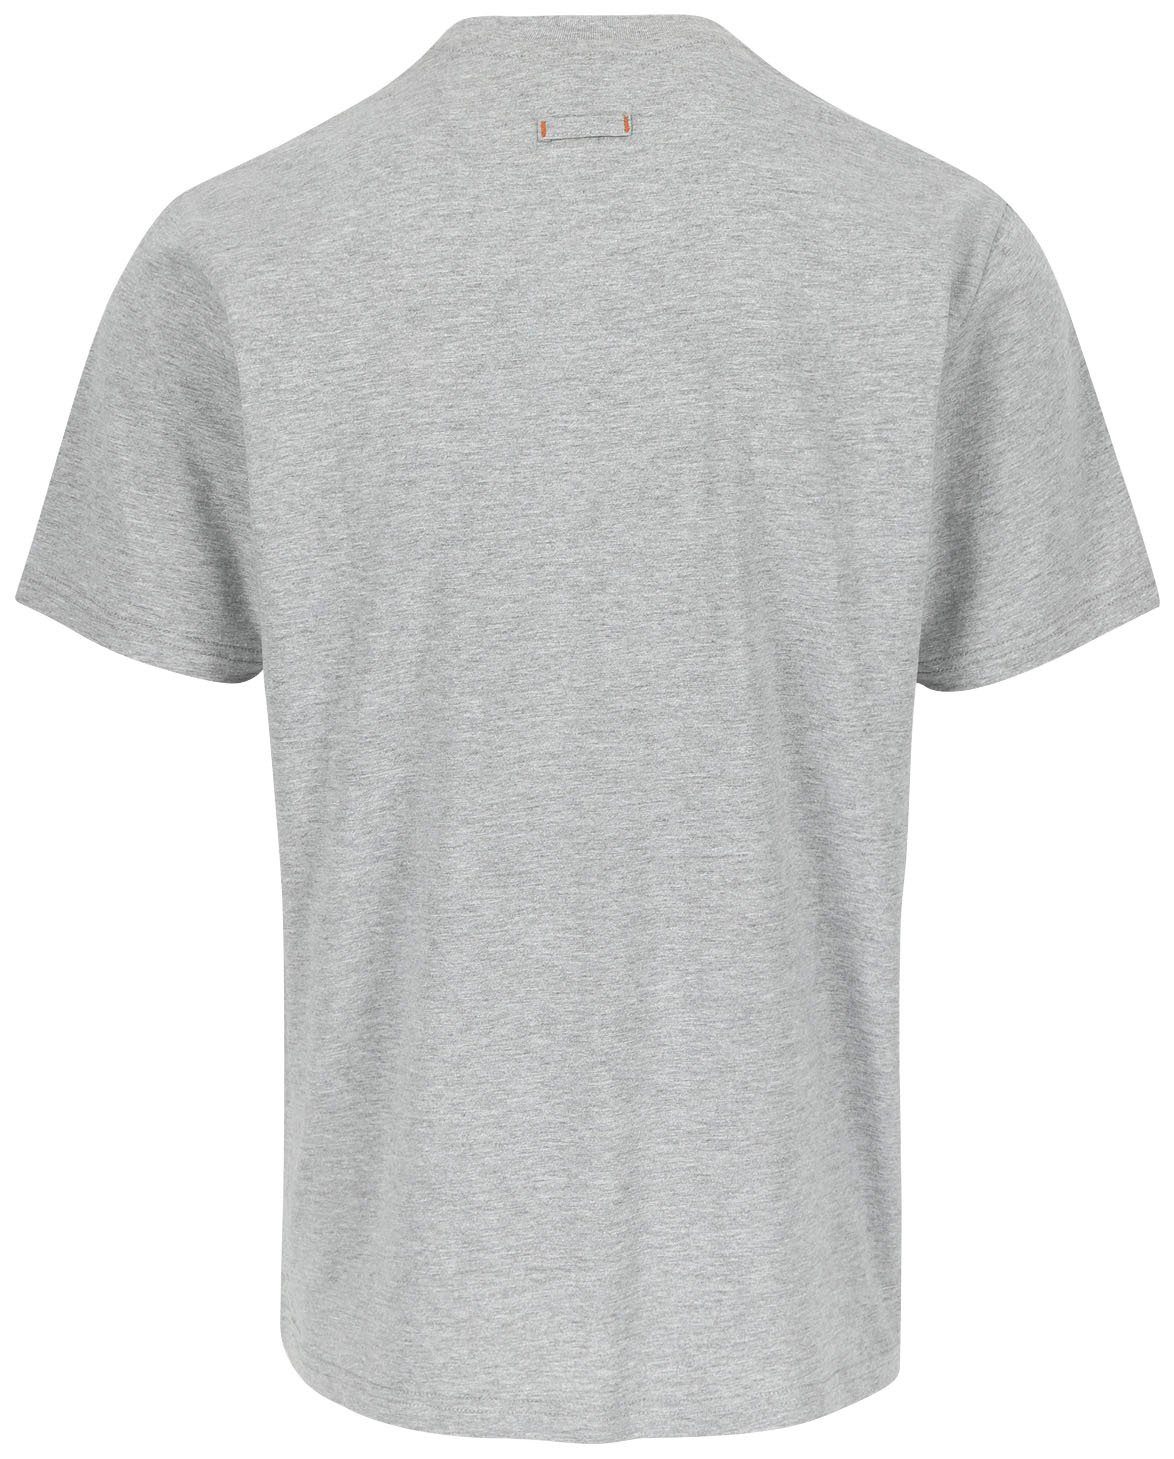 Tragegefühl Rundhals, grau Herock mit T-Shirt ENI Herock®-Aufdruck, angenehmes Baumwolle,